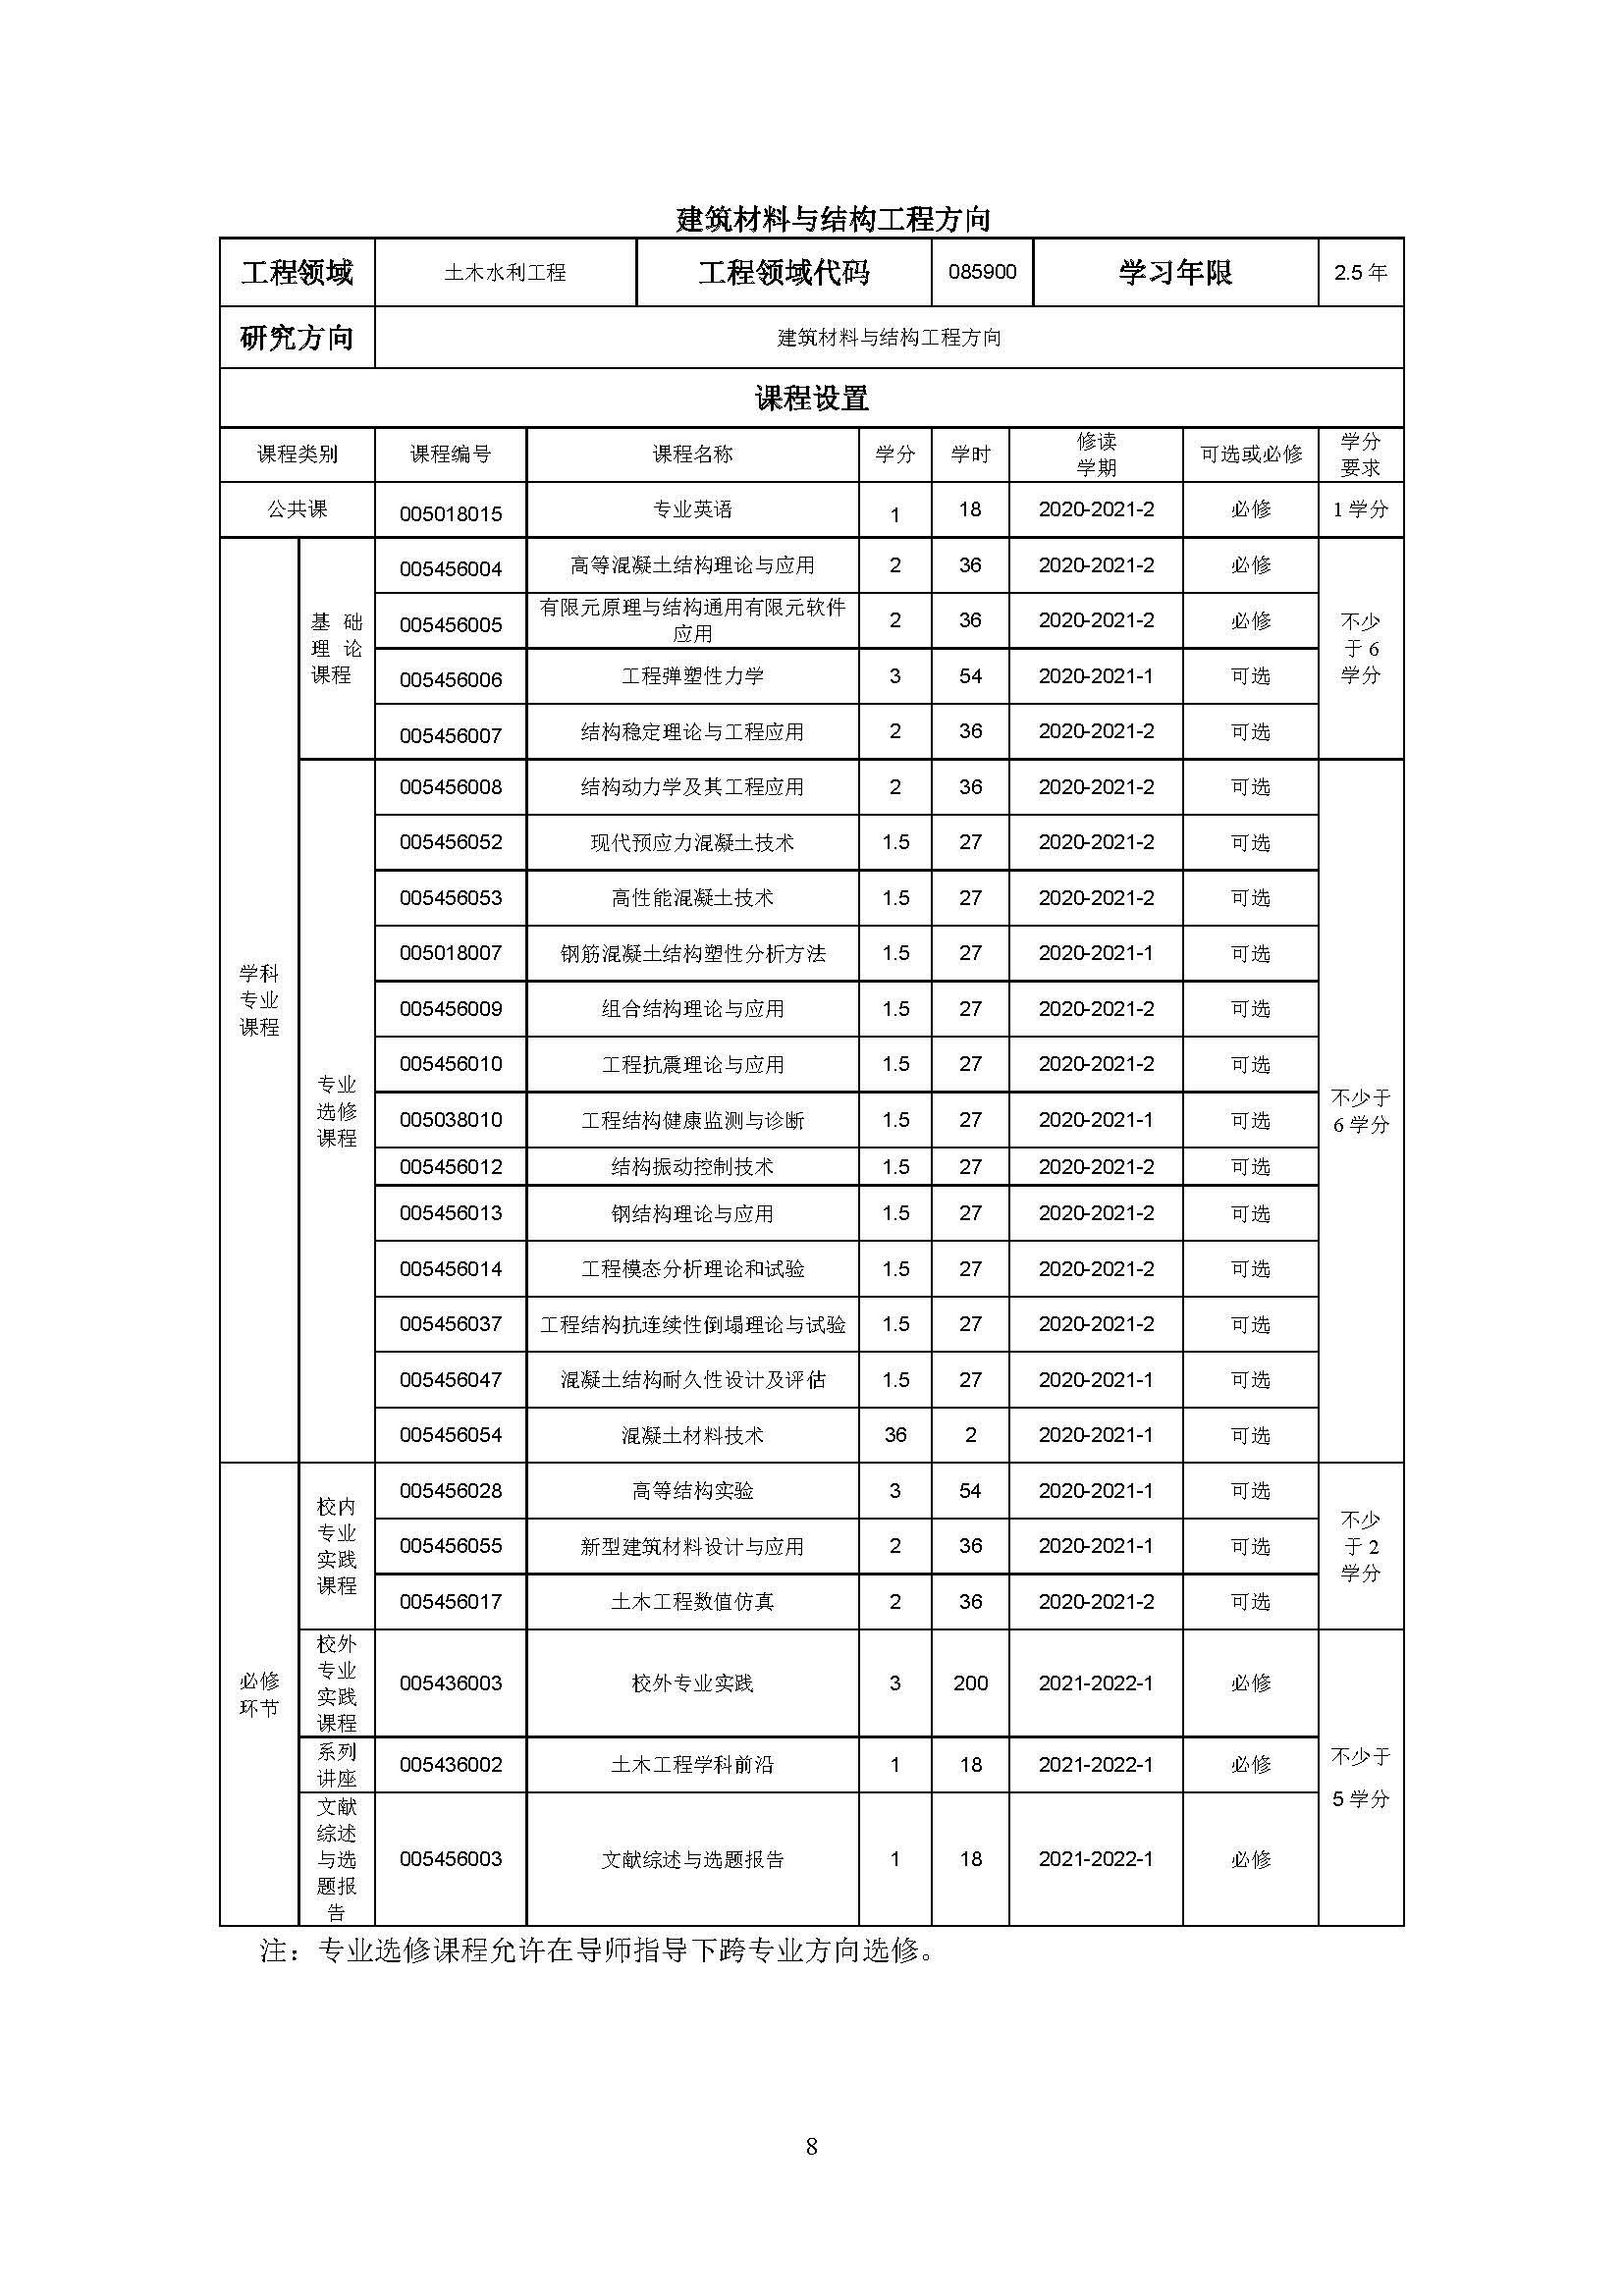 福州大学2020级土木水利专业研究生培养方案_页面_08